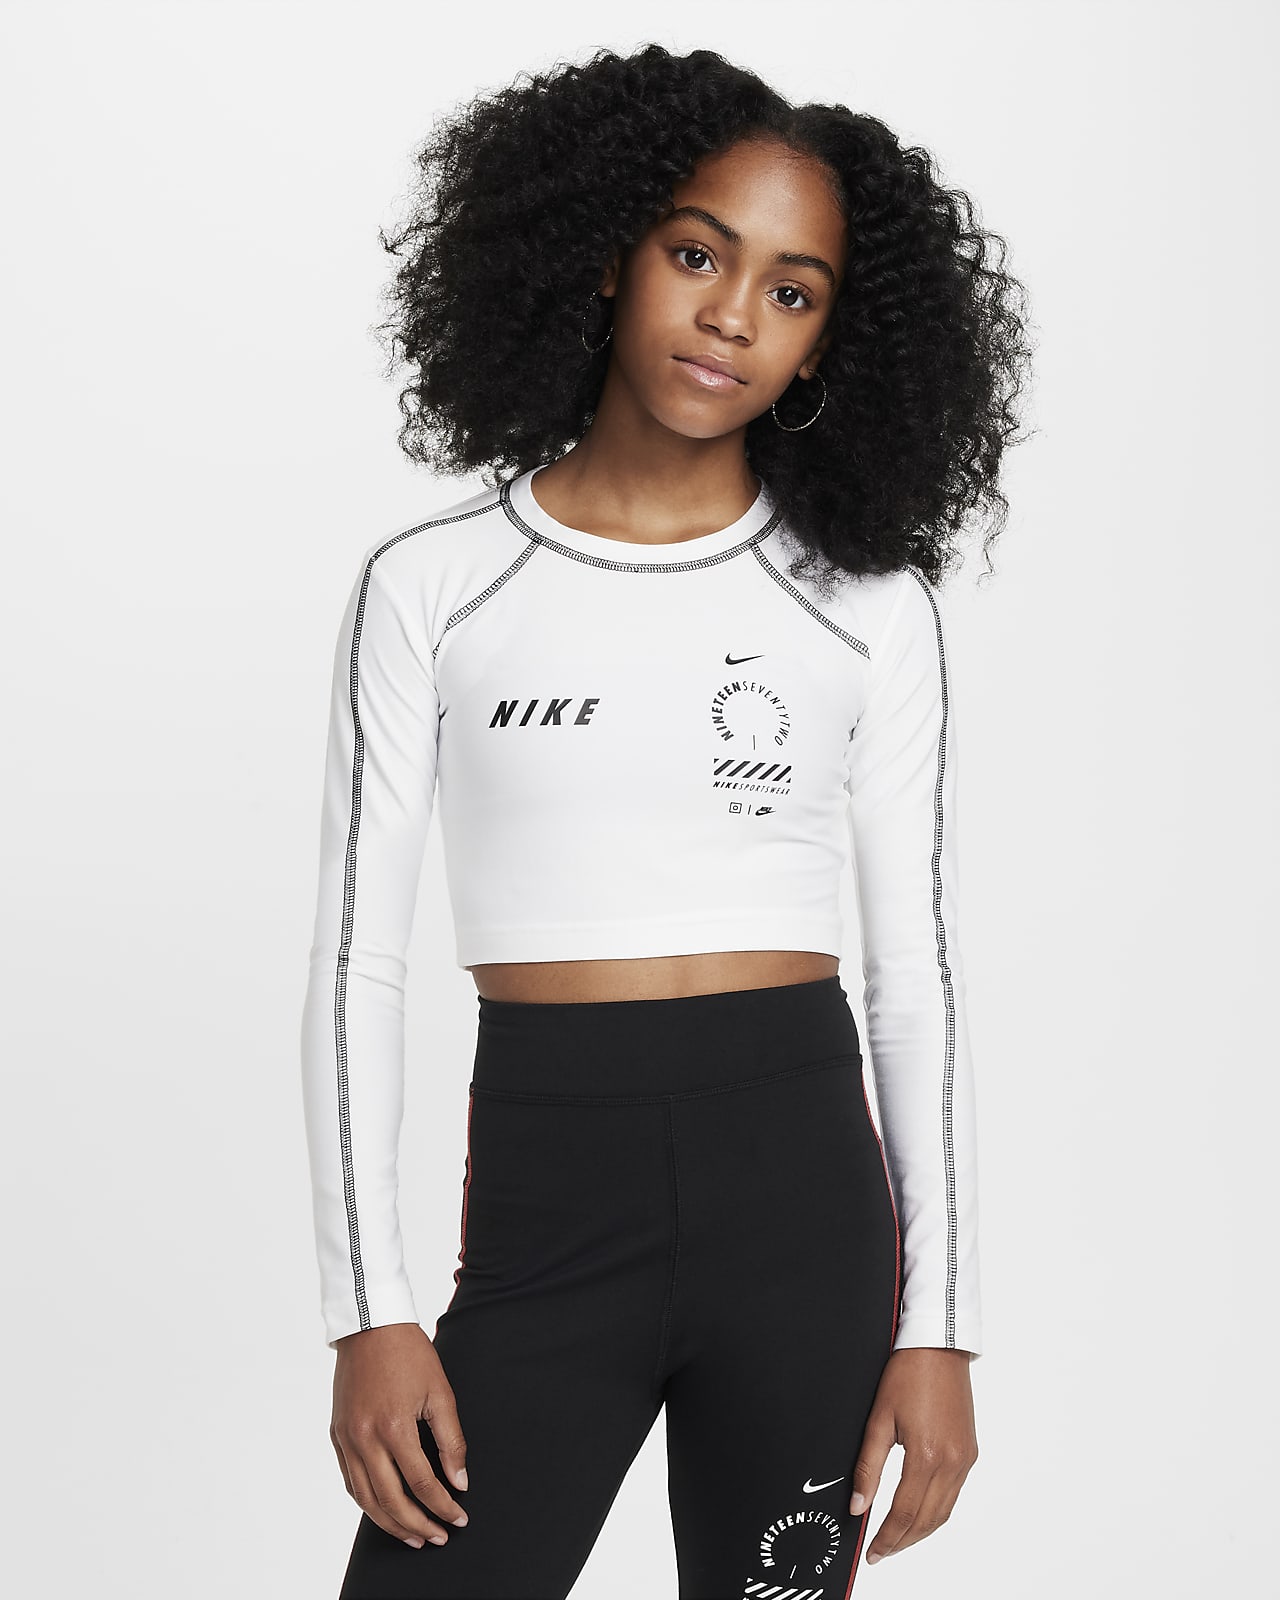 Crop top à manches longues Nike Sportswear pour fille